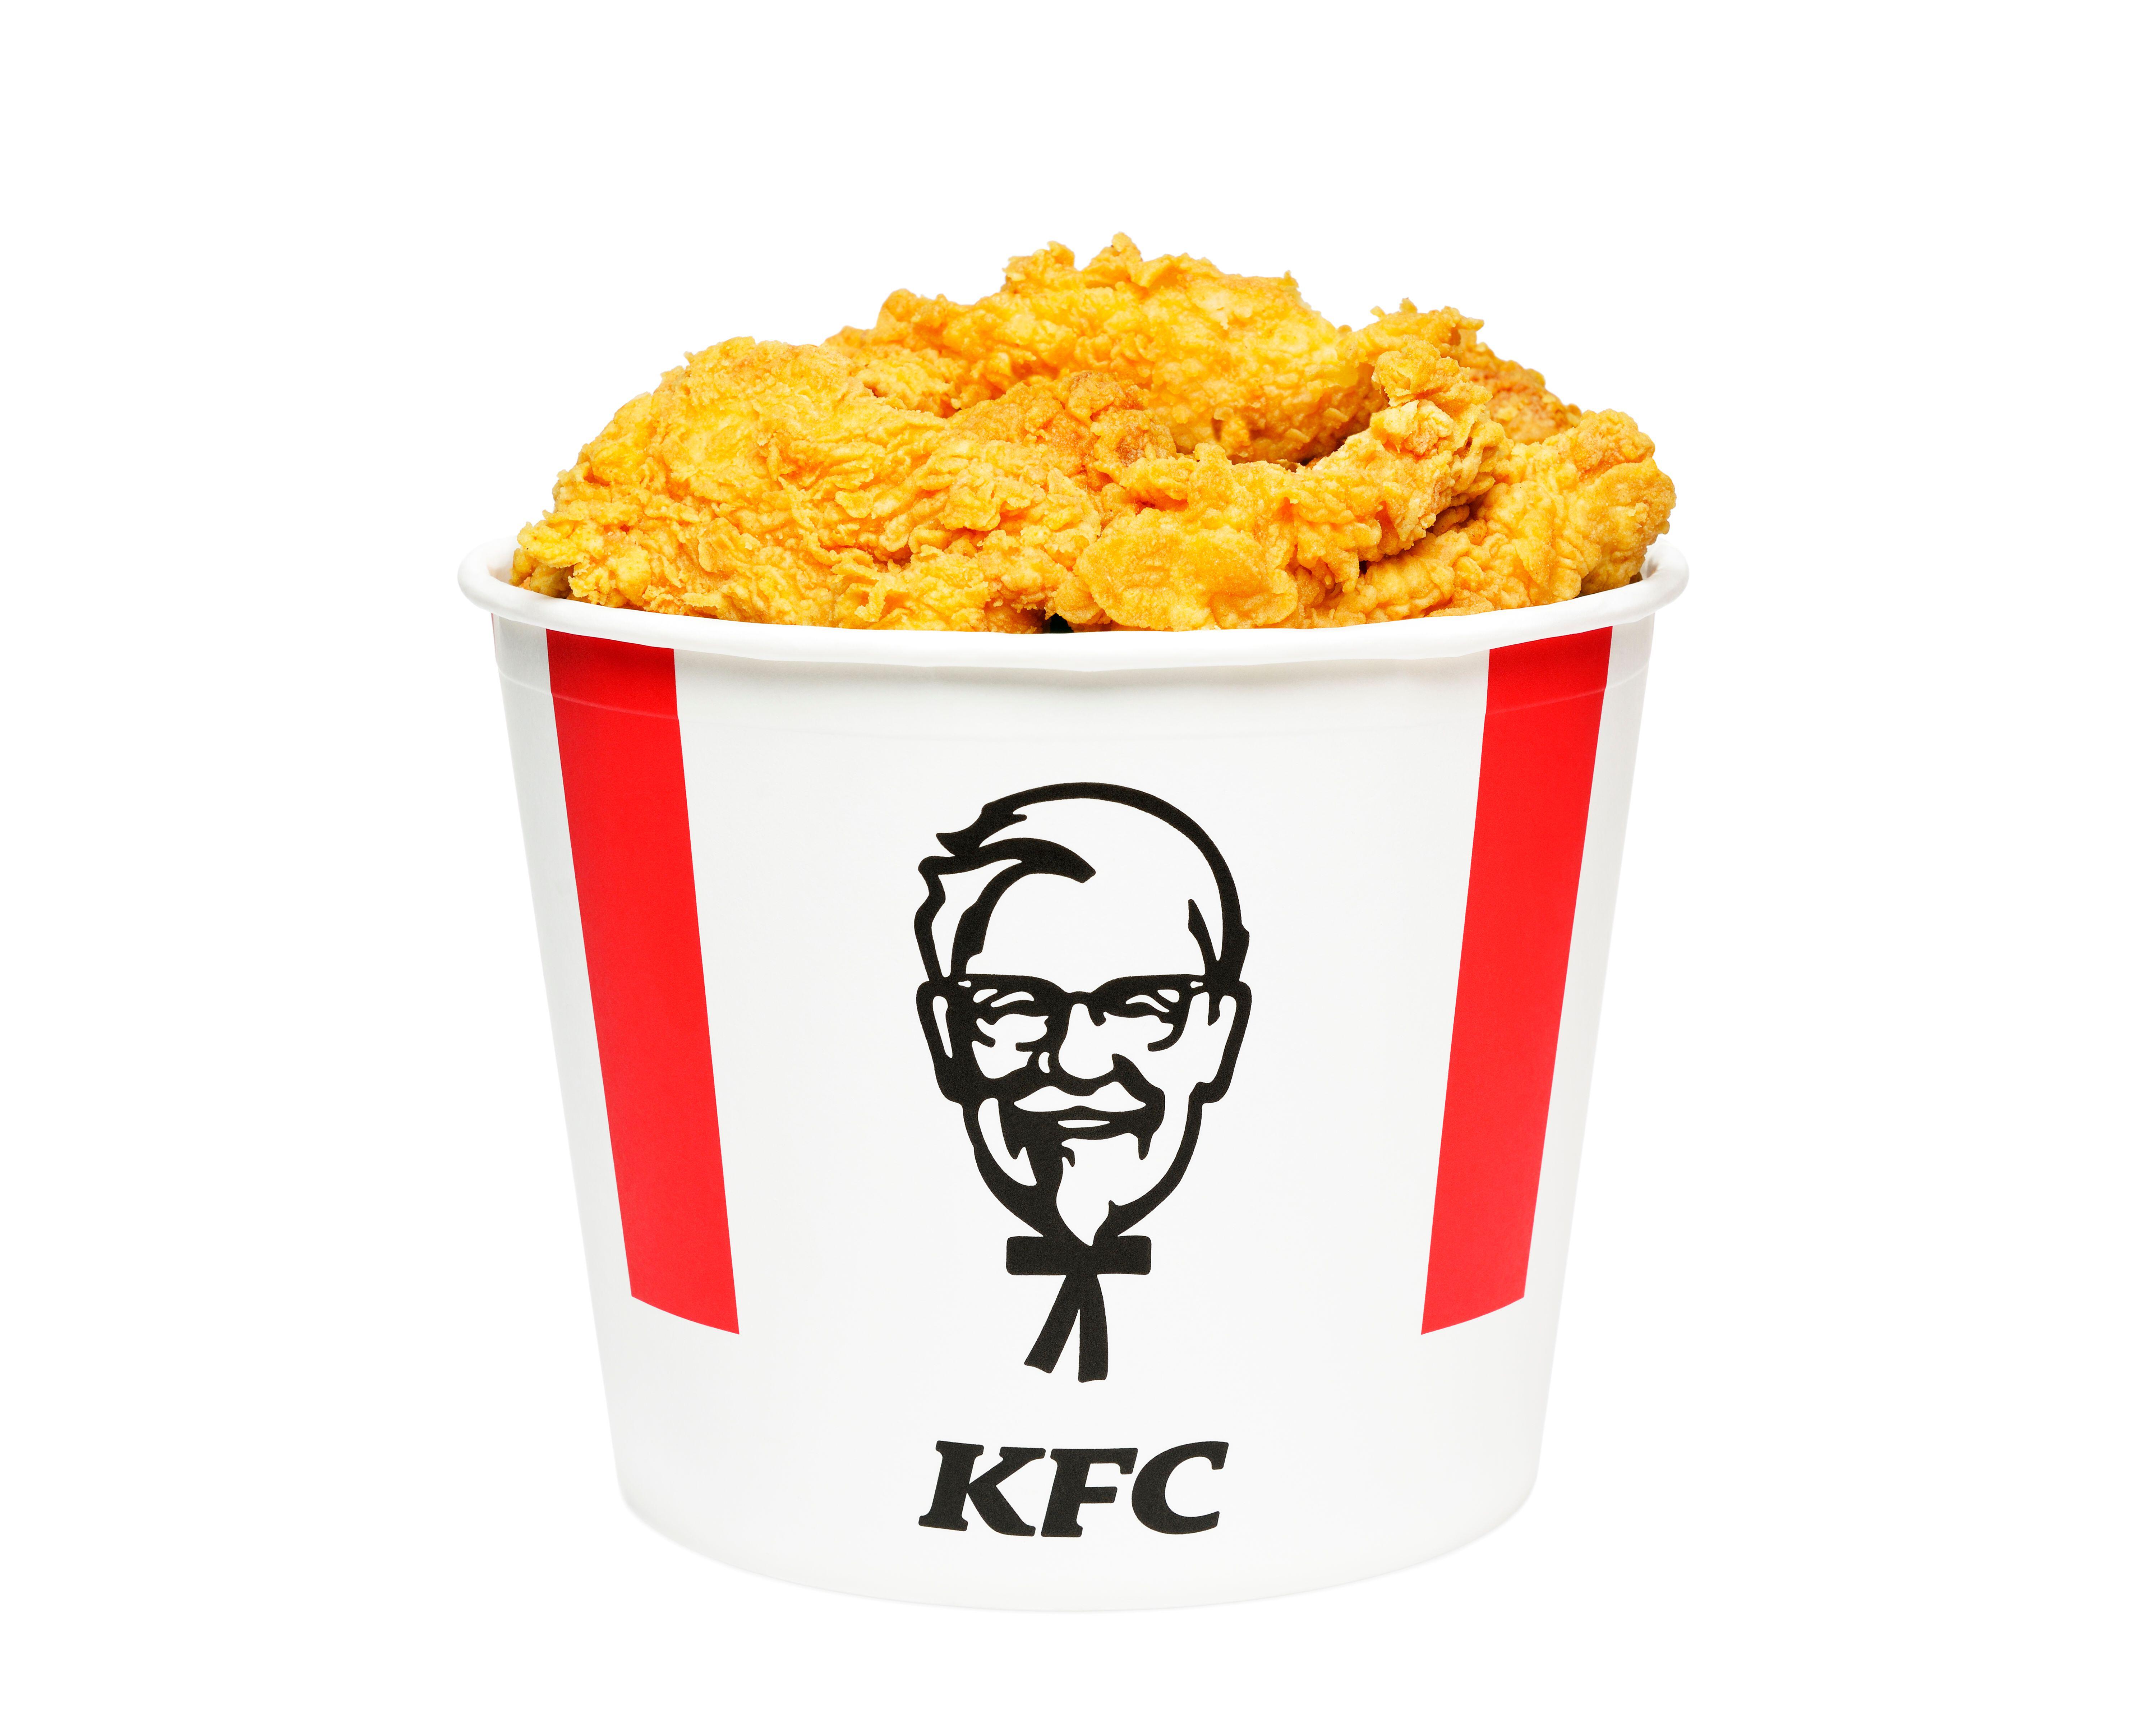 Gefrorene Nuggets sind immer noch besser als ein Eimer KFC